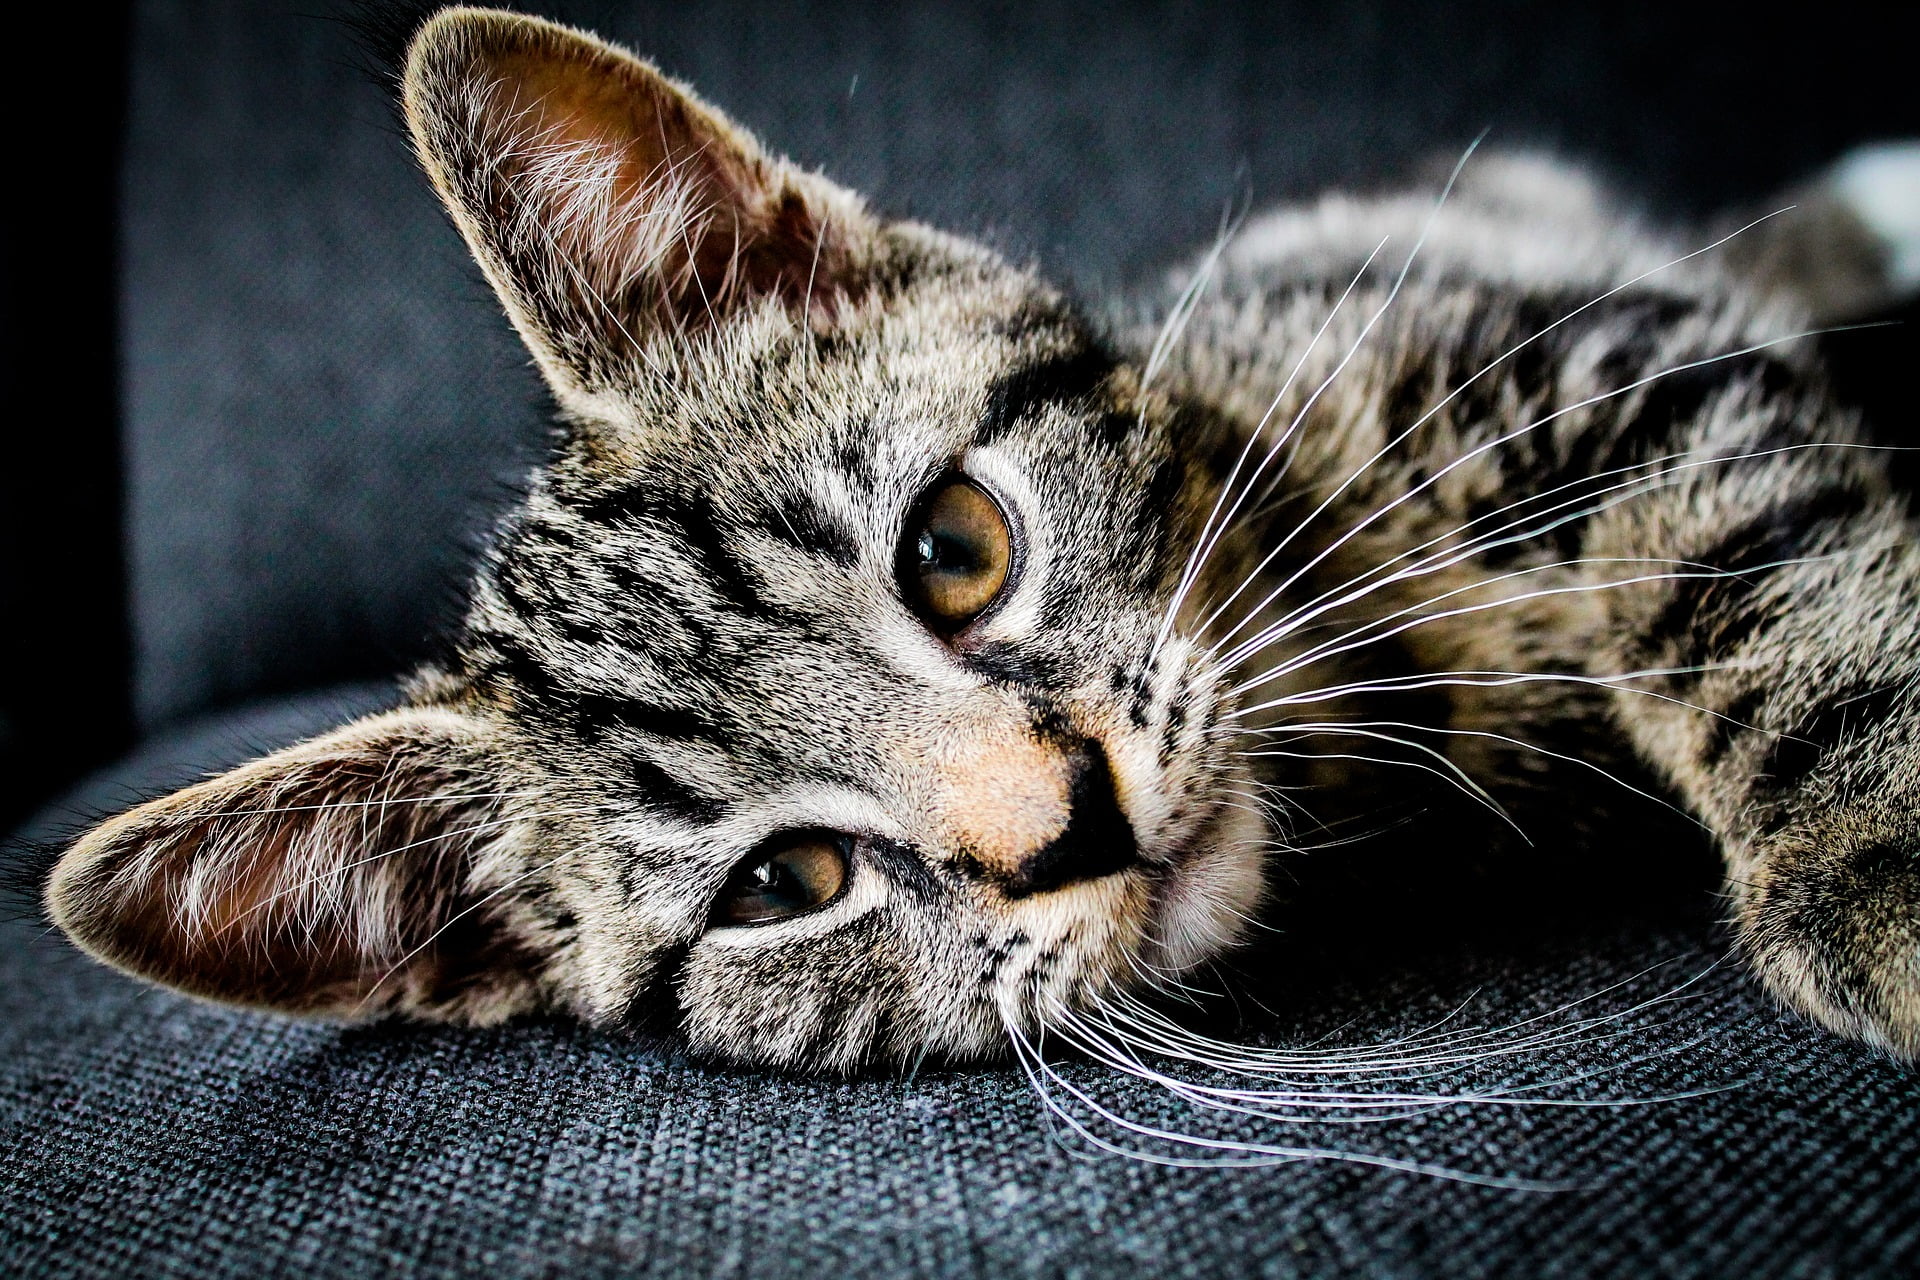 Ingår medicin i kattförsäkringar?